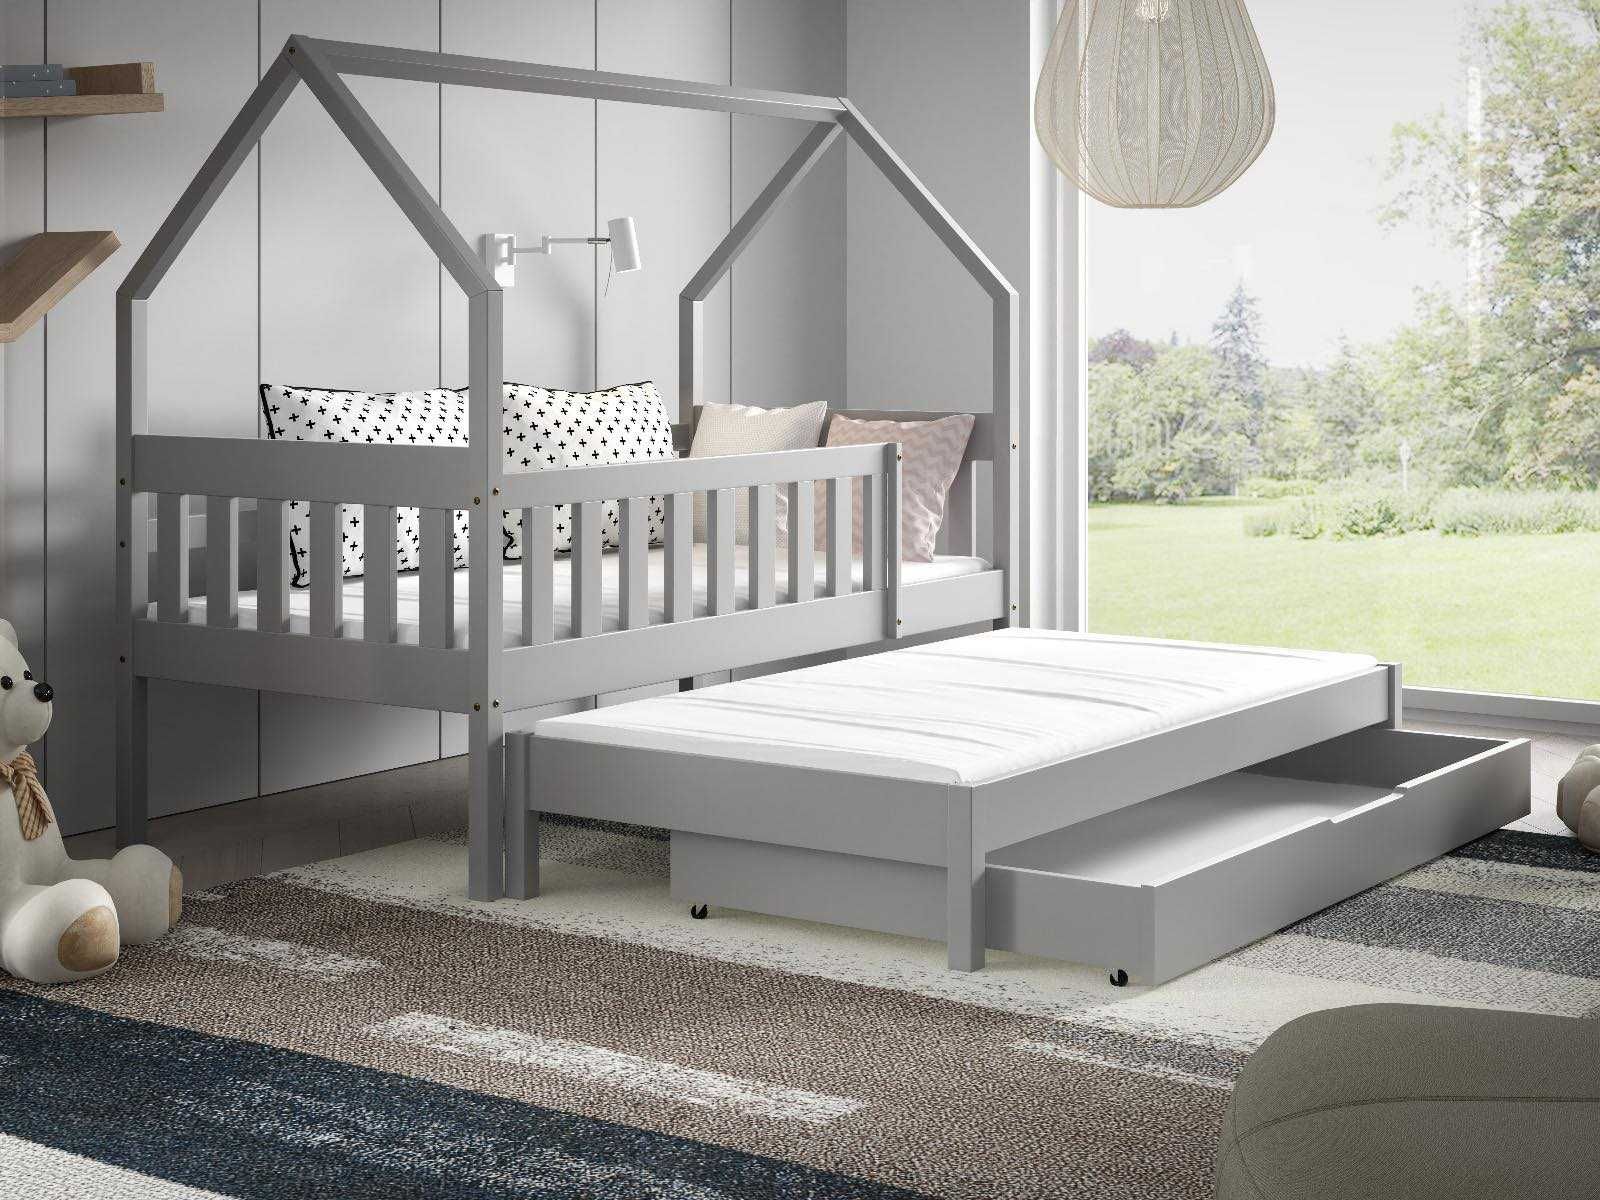 Łóżko dla dzieci dwu osobowe domek LUNA - materace GRATIS